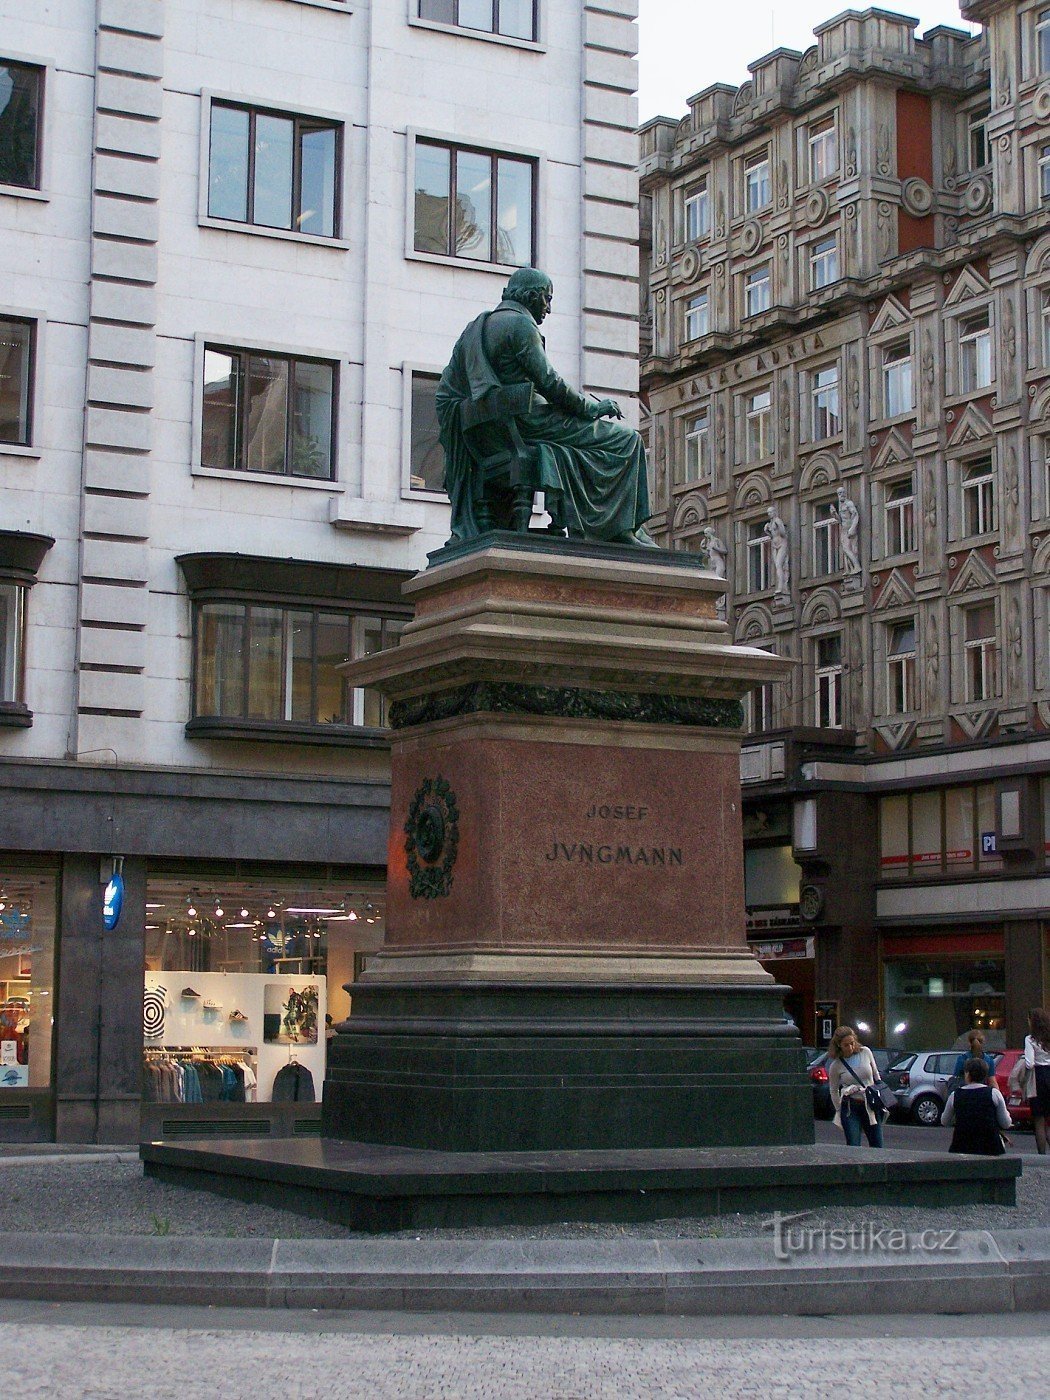 Đài tưởng niệm Josef Jungmann